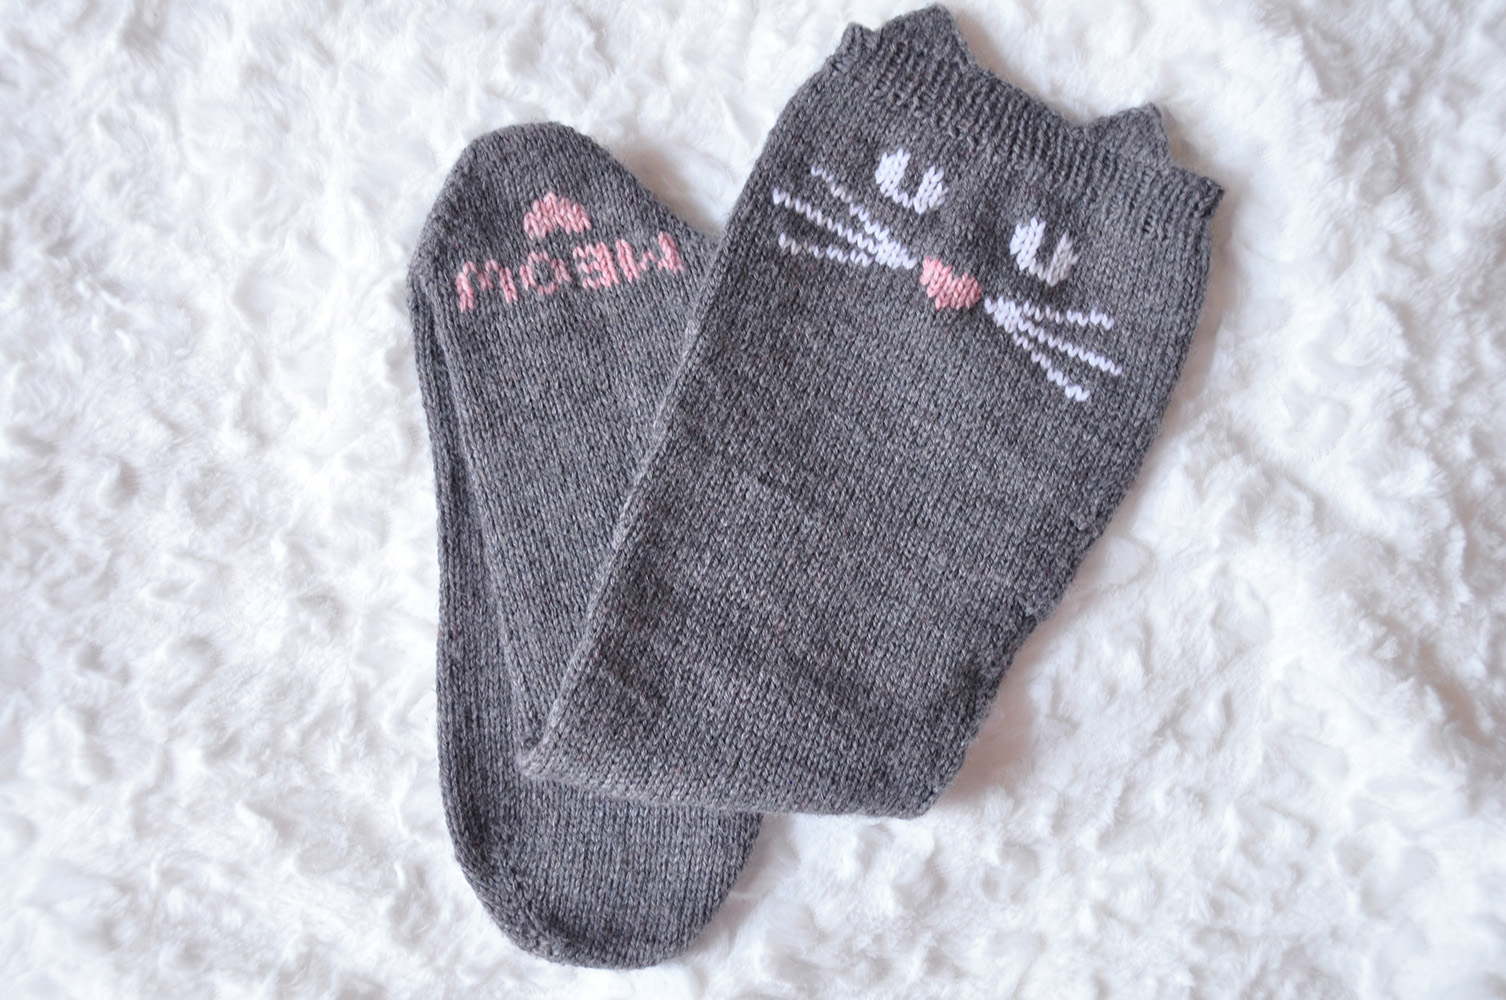 “Check Meowt!” Animal Knee High Socks